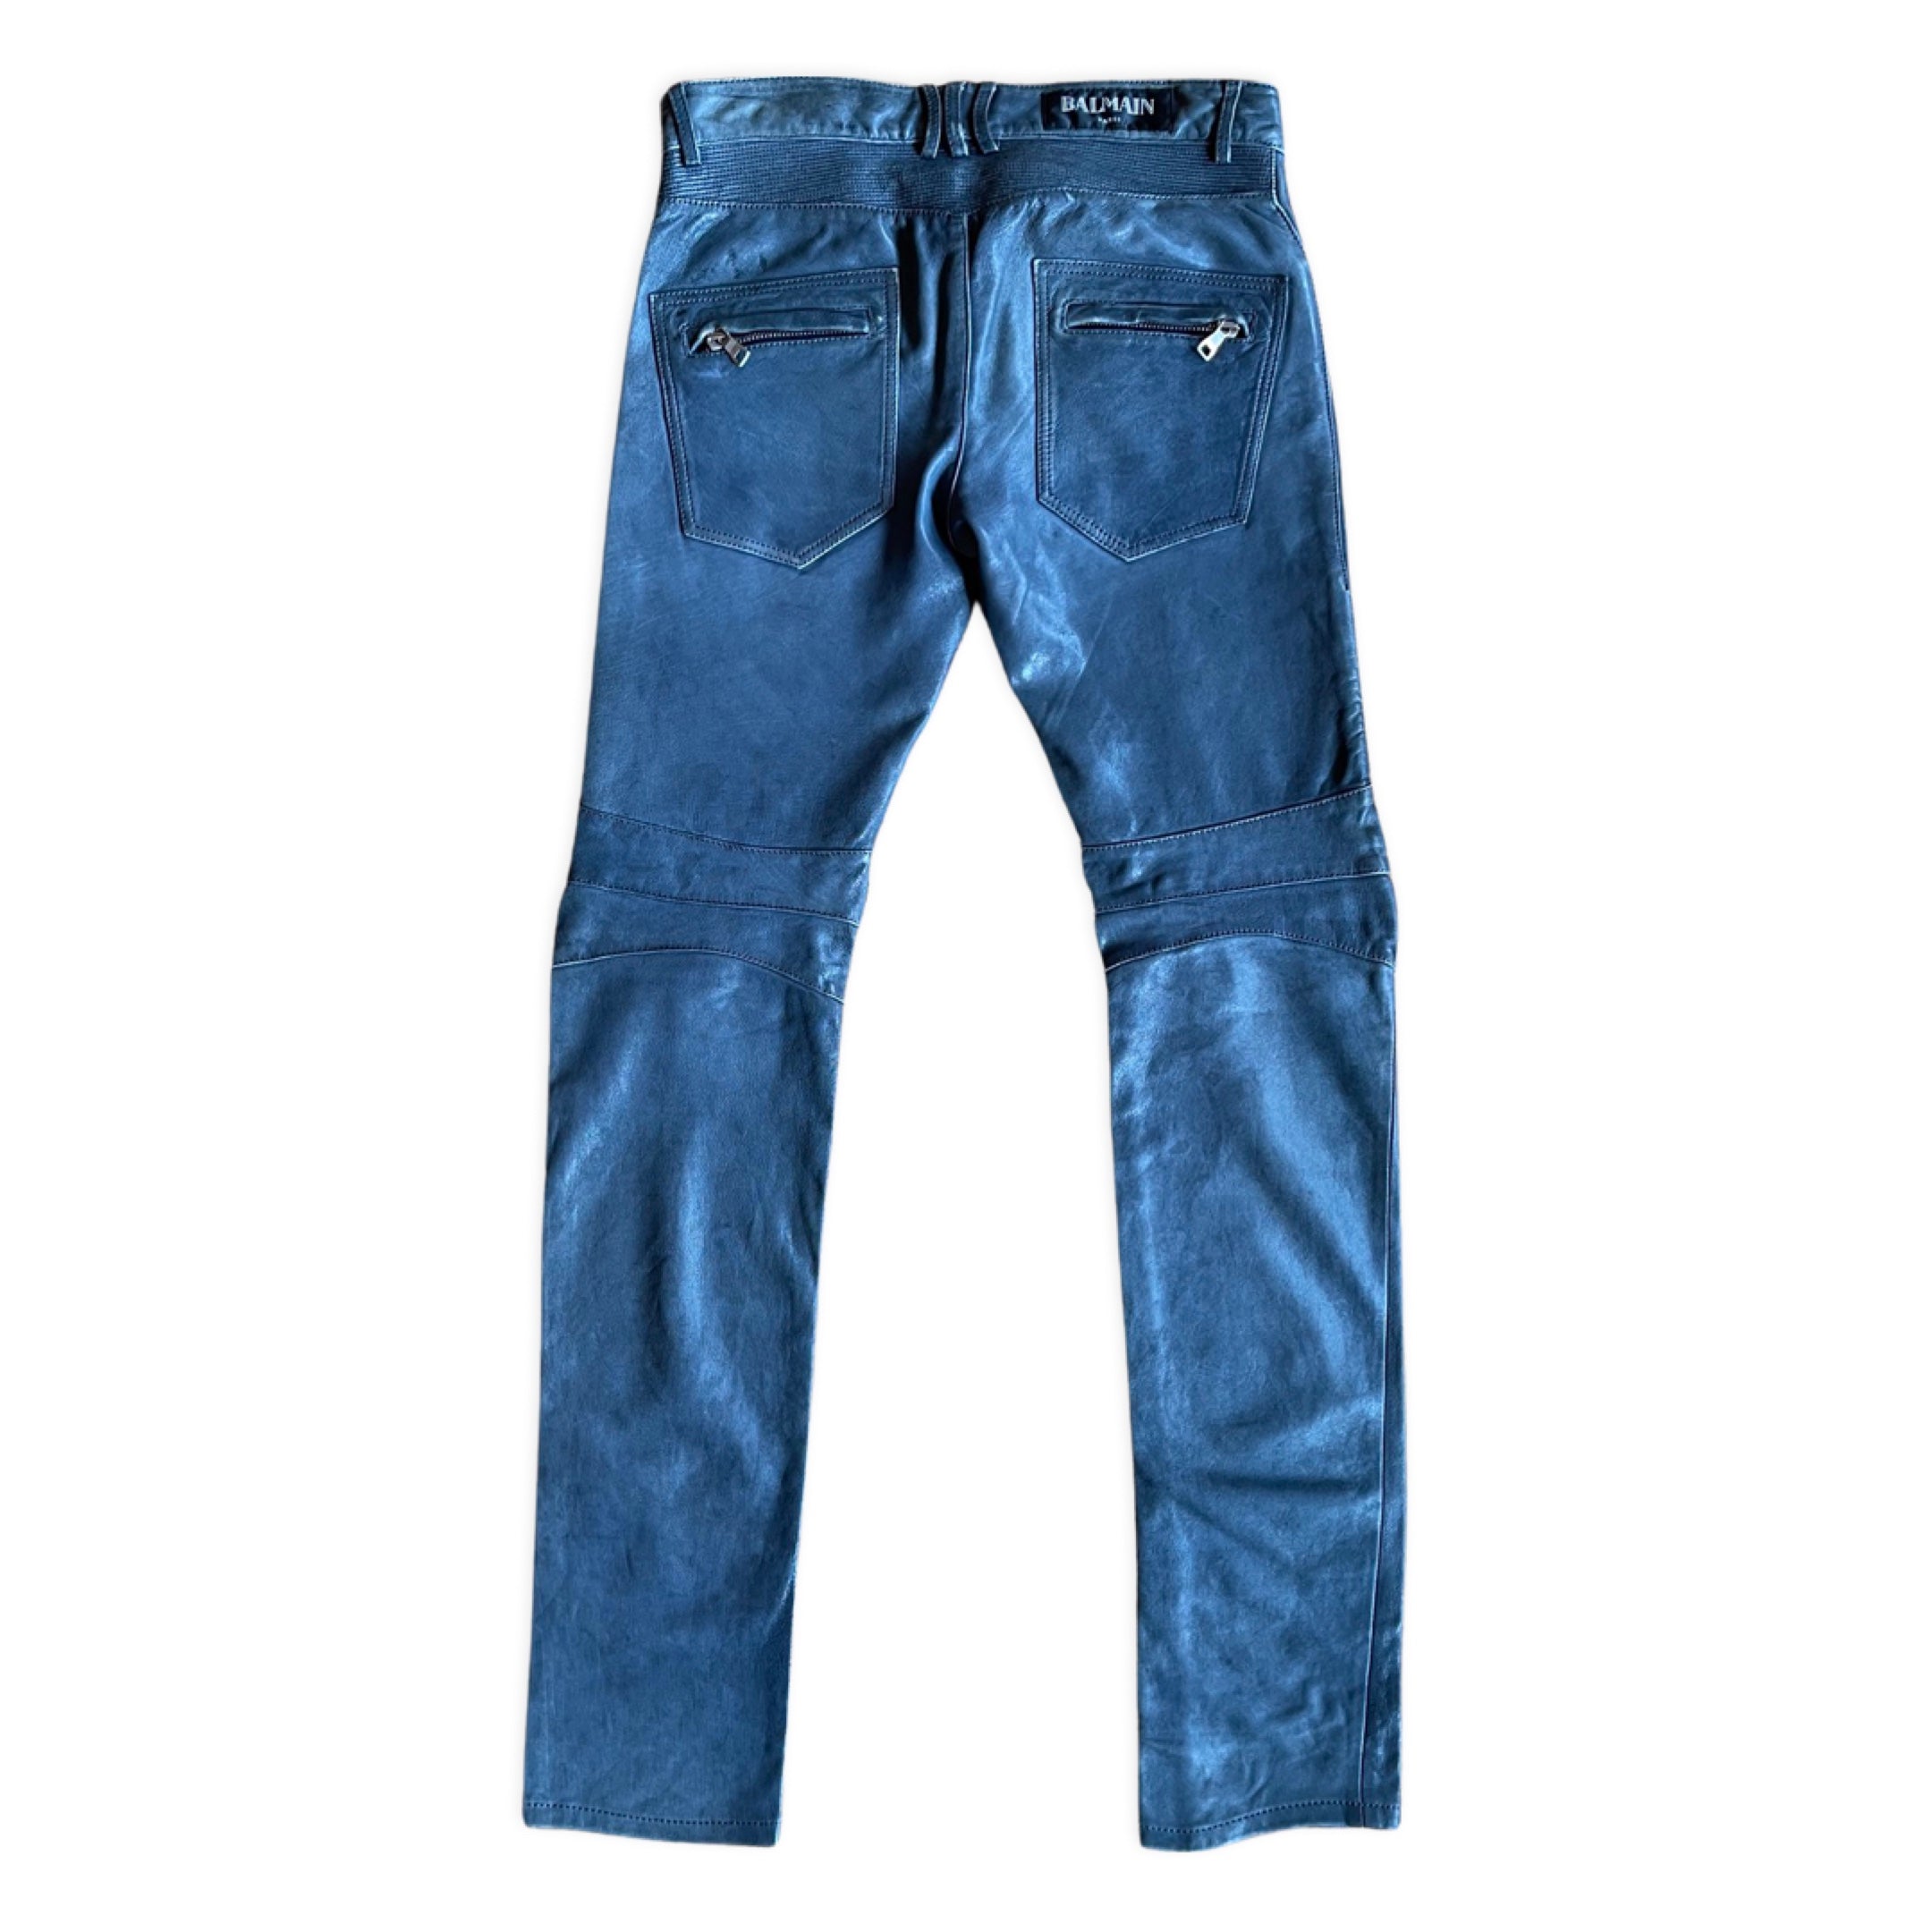 BALMAIN Slim-Fit Jeans for Men | MR PORTER